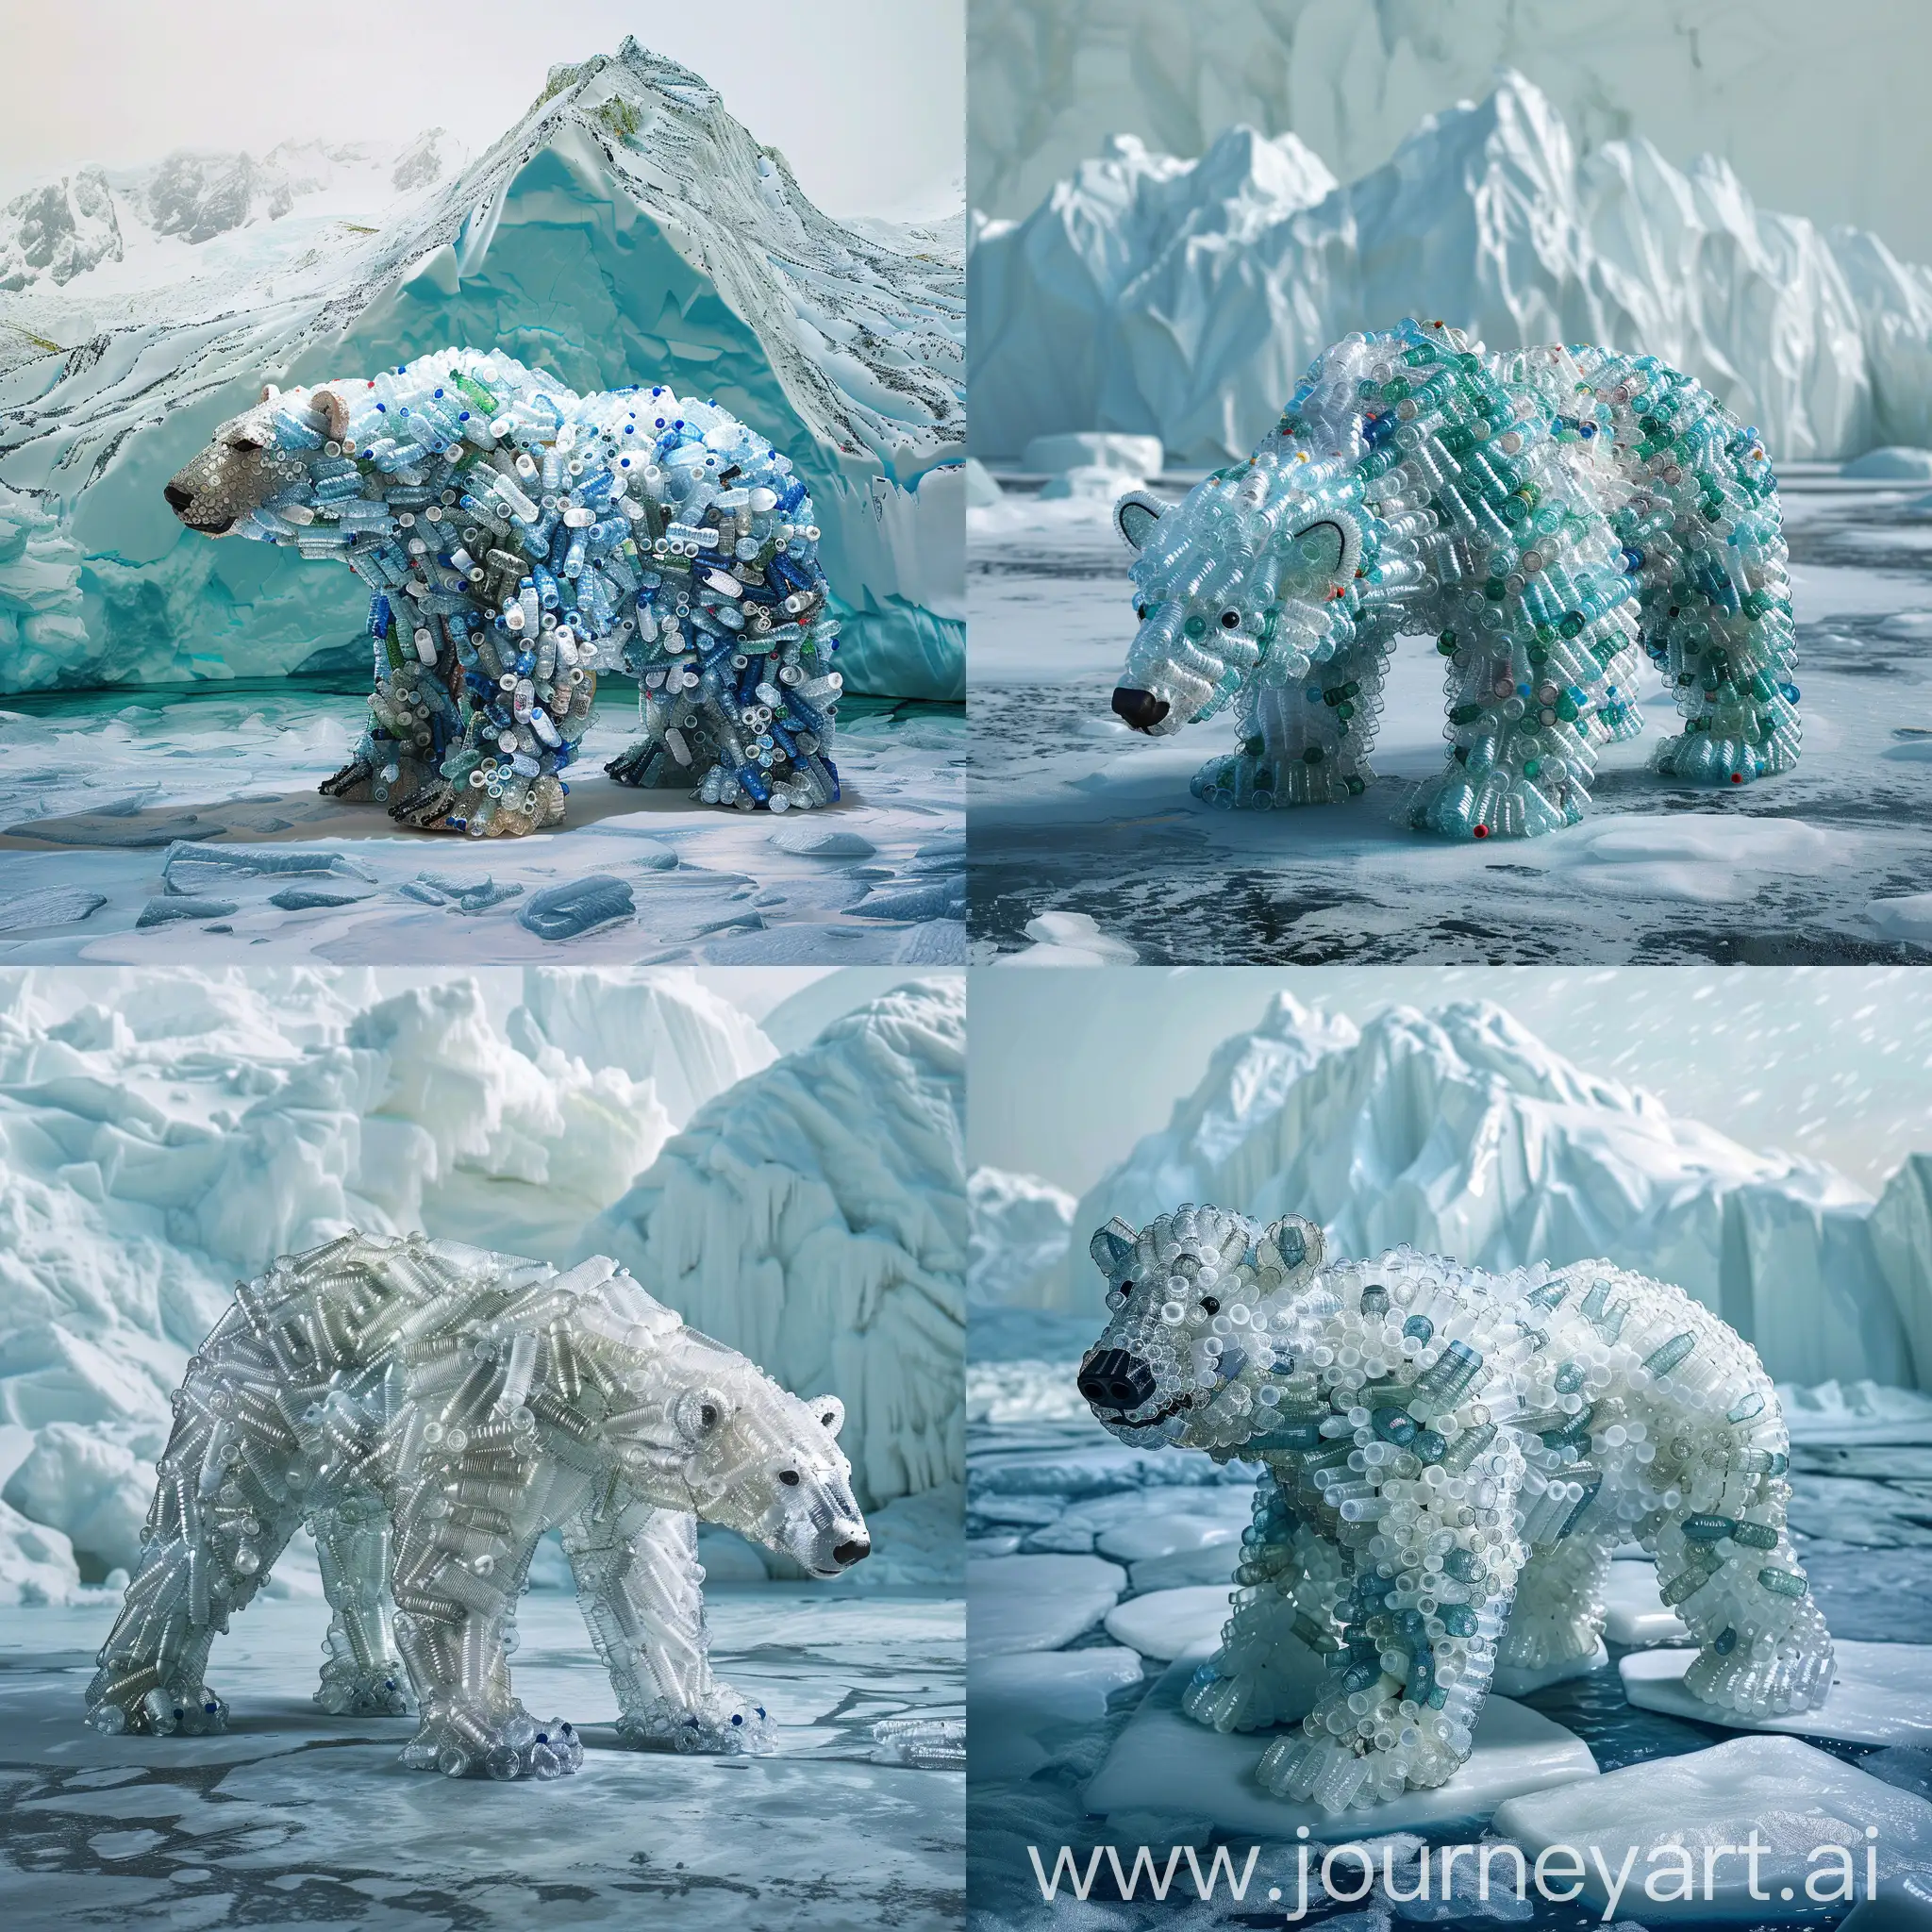 crea orso polare fatto di bottiglie di plastica, sullo sfondo al posto del ghiacciaio c'è un immenso ammasso di plastica, polo nord